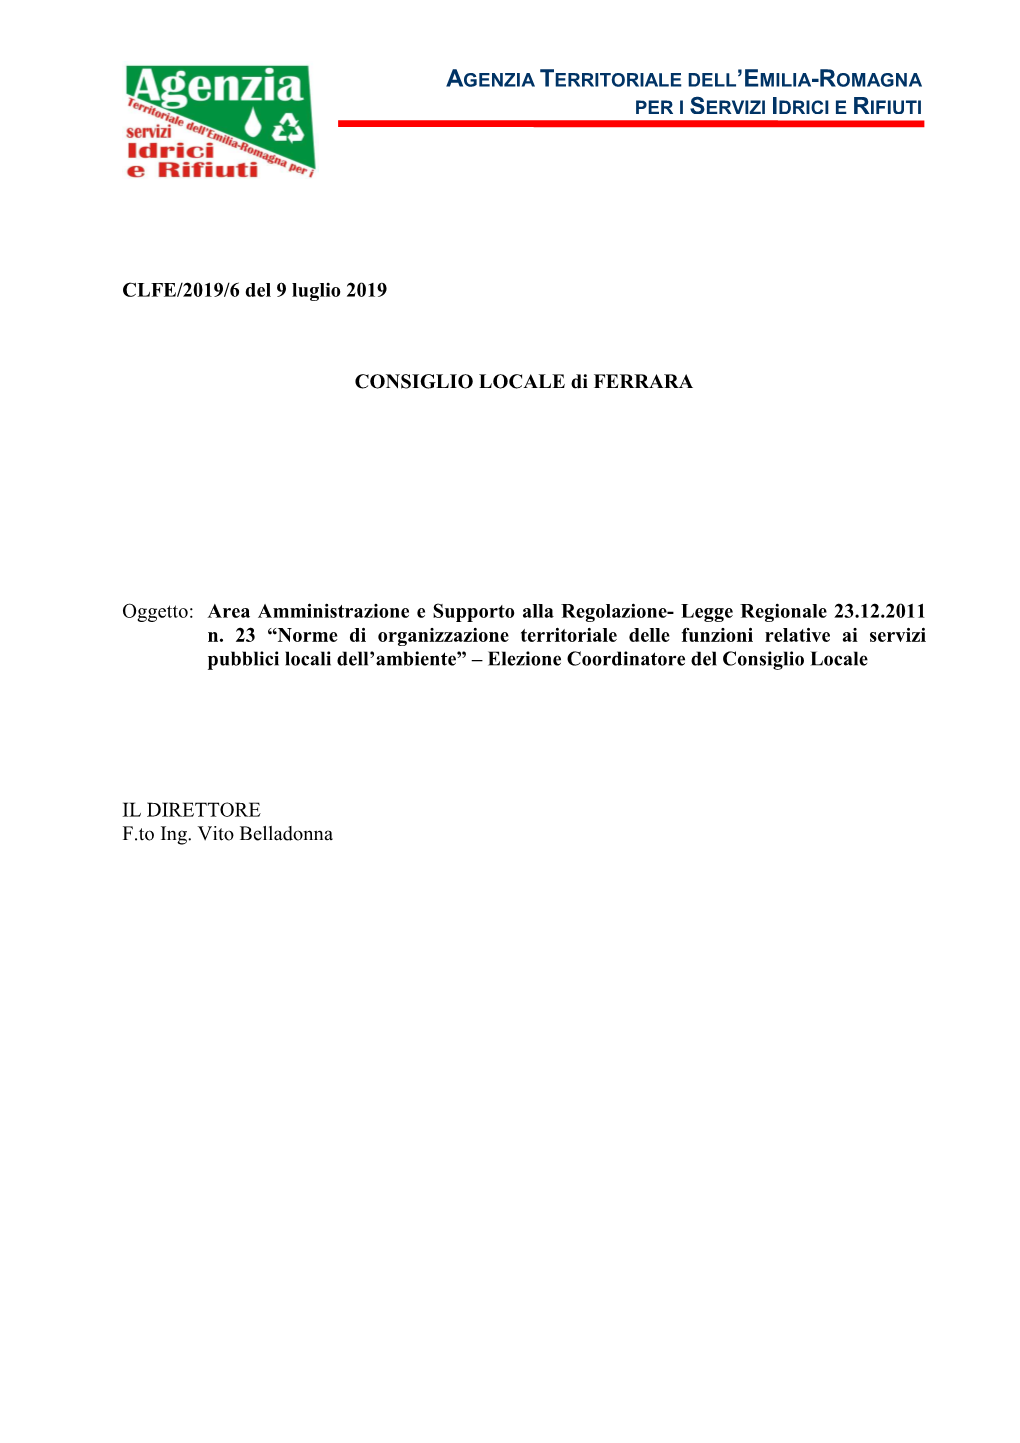 Deliberazione Del Consiglio Locale Di Ferrara N. 6 Del 9 Luglio 2019